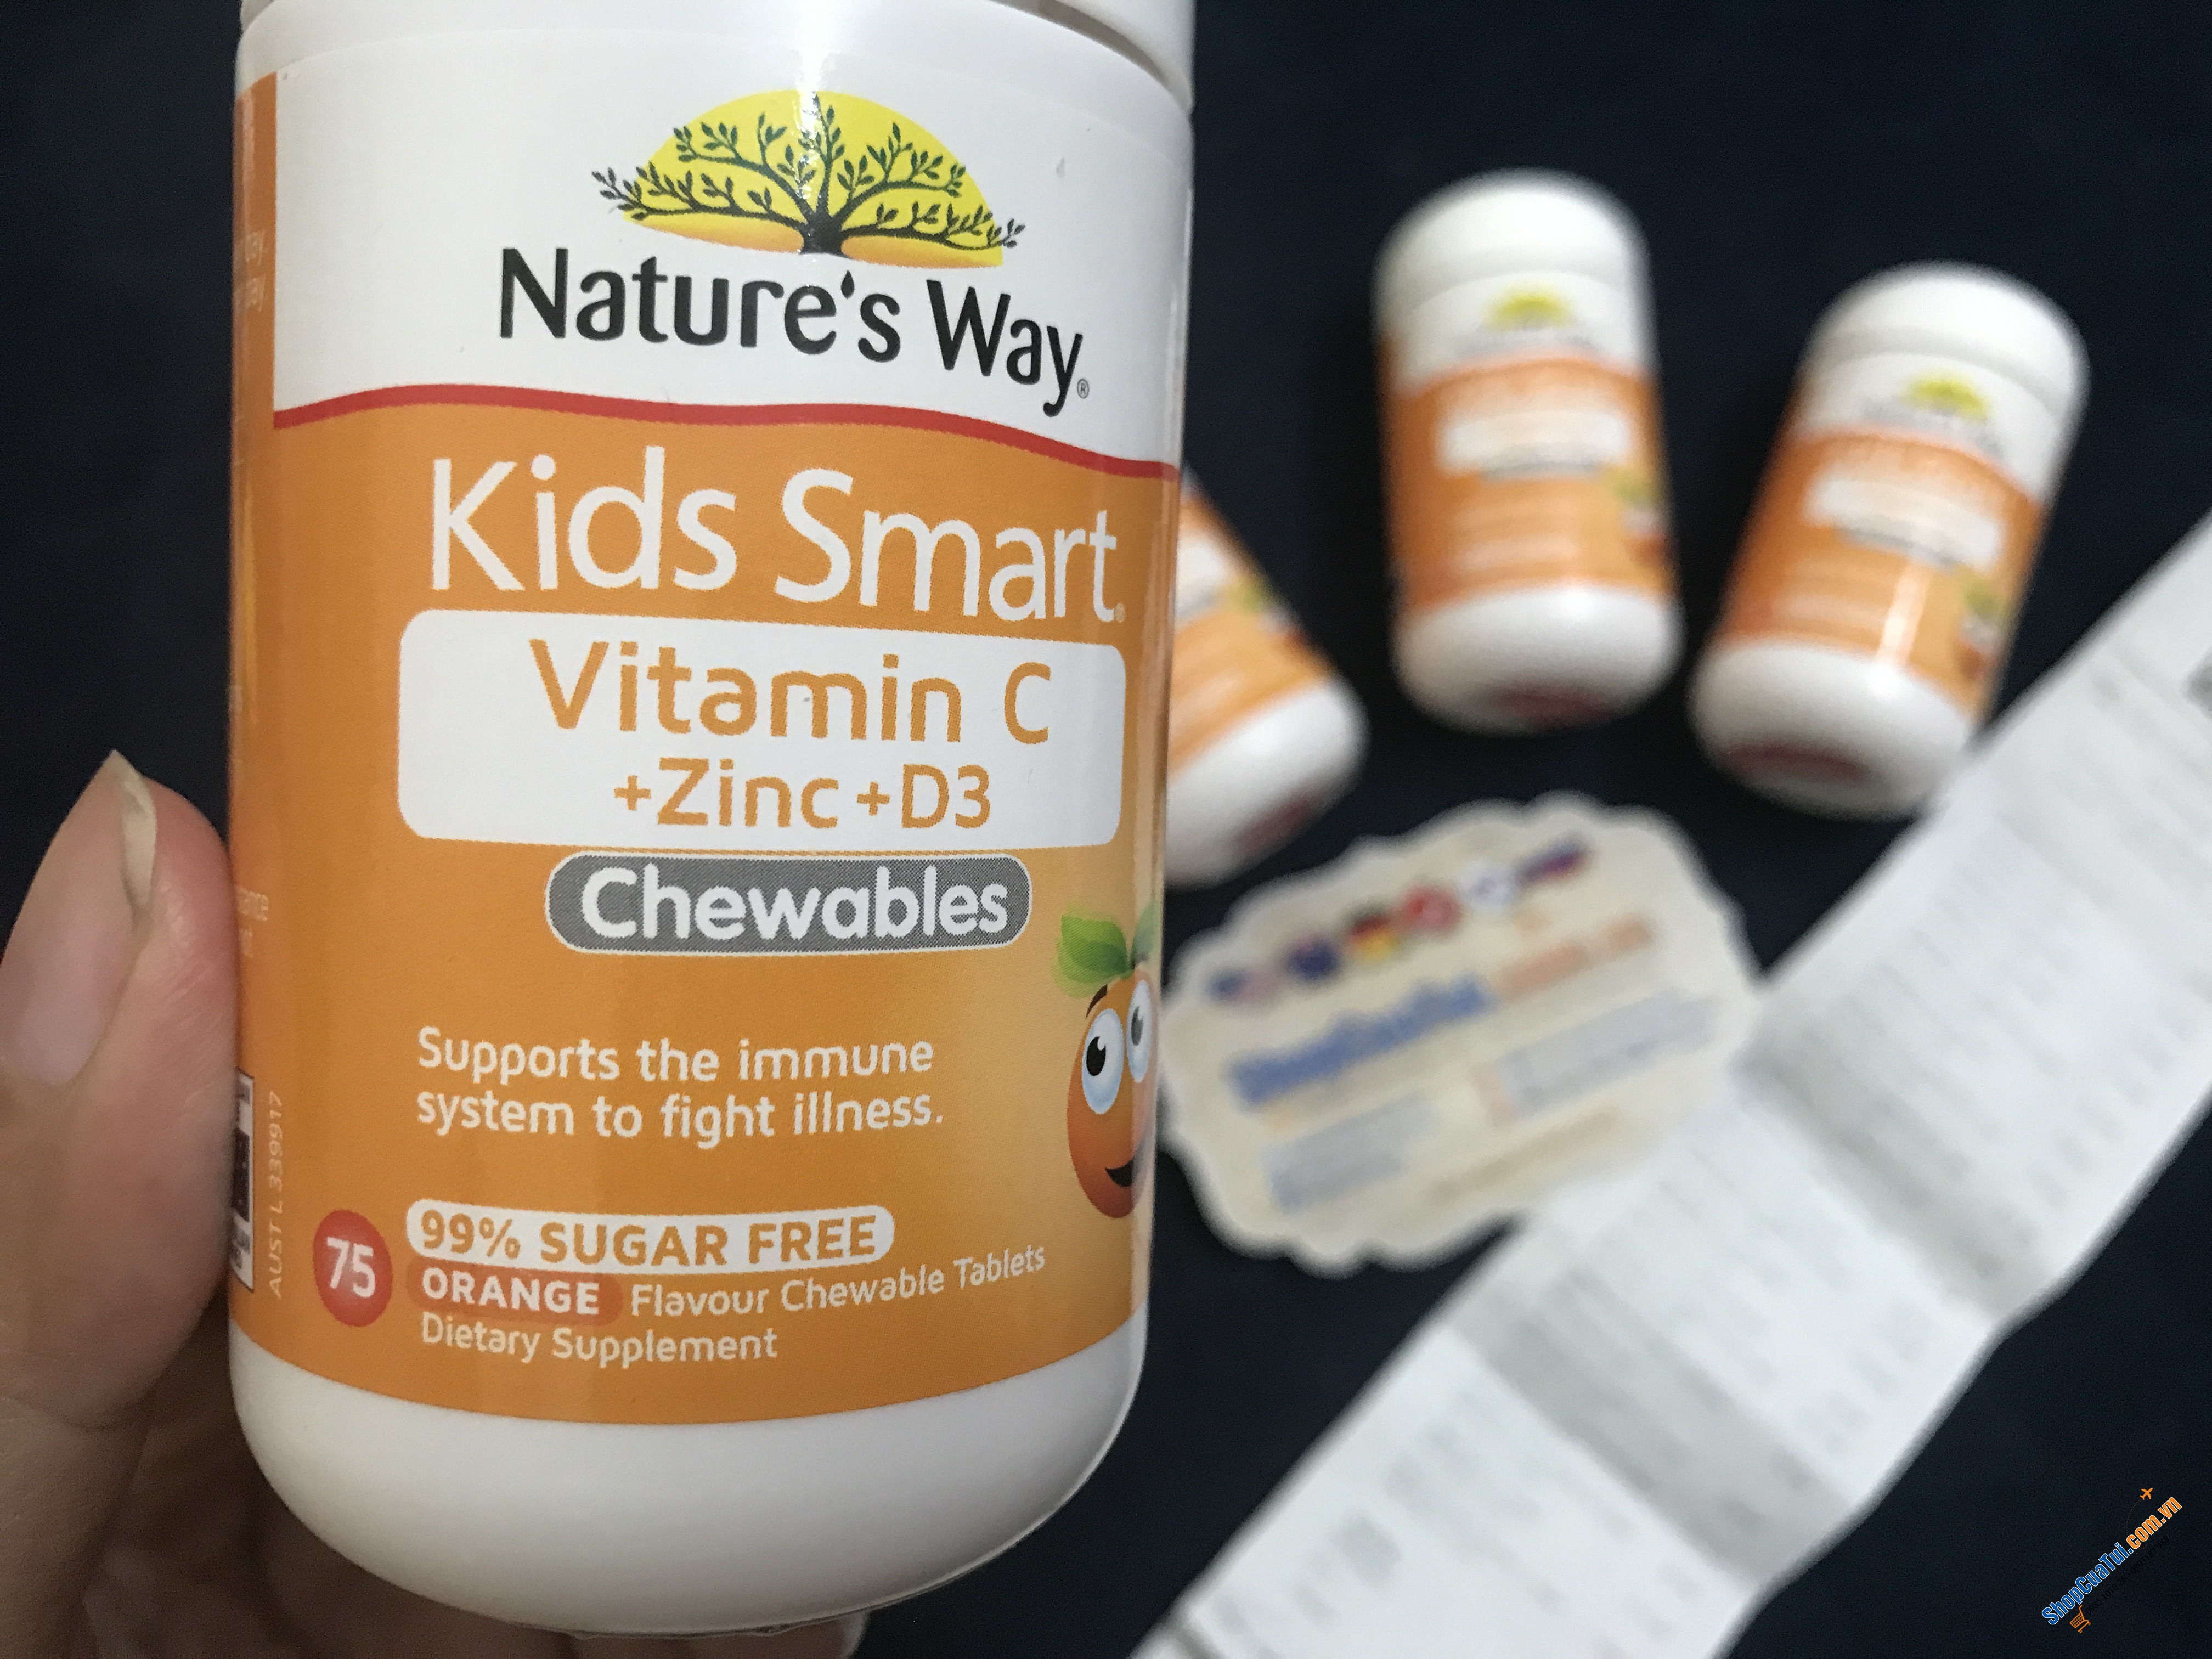 Viên nhai Nature Way Kids Smart Vitamin C + Zinc + D3 Chewables 75 Tablets For Children hỗ trợ bổ sung Vitamin C, kẽm, D3 để nâng cao sức khỏe tổng thể, hỗ trợ sự tăng trưởng và phát triển khỏe mạnh cho trẻ em từ 2 tuổi trở lên